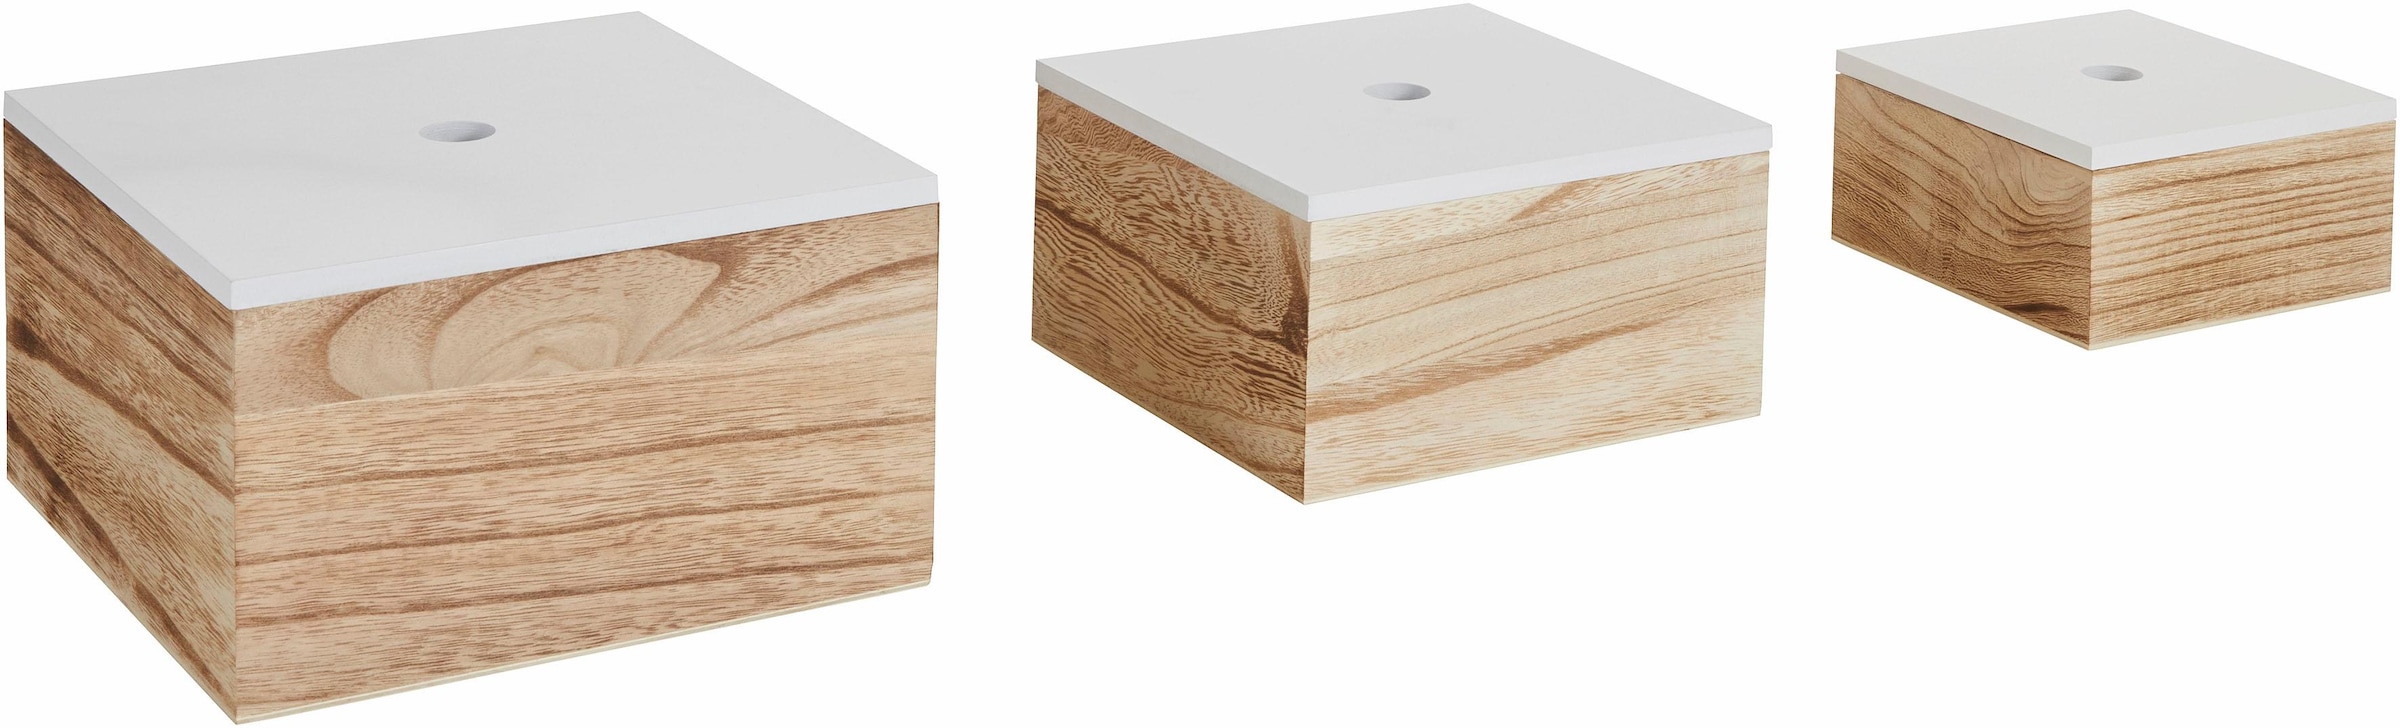 Zeller Present Aufbewahrungsbox, 3er Set, im Shop weiß/natur OTTO Online kaufen Holz